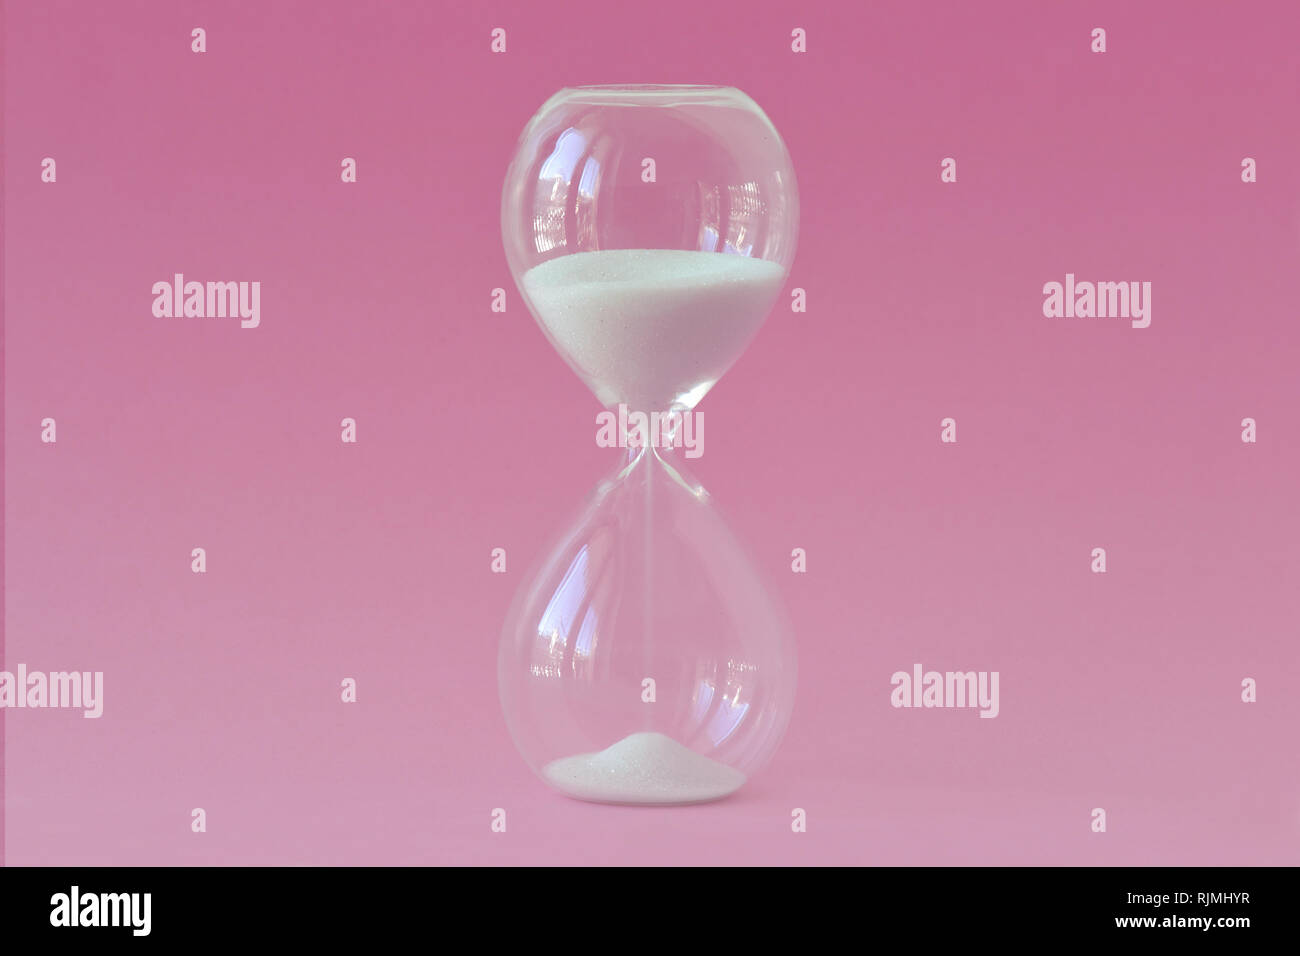 Hourglass sur fond rose - Concept de la santé, la fertilité et l'horloge biologique chez les femmes Banque D'Images